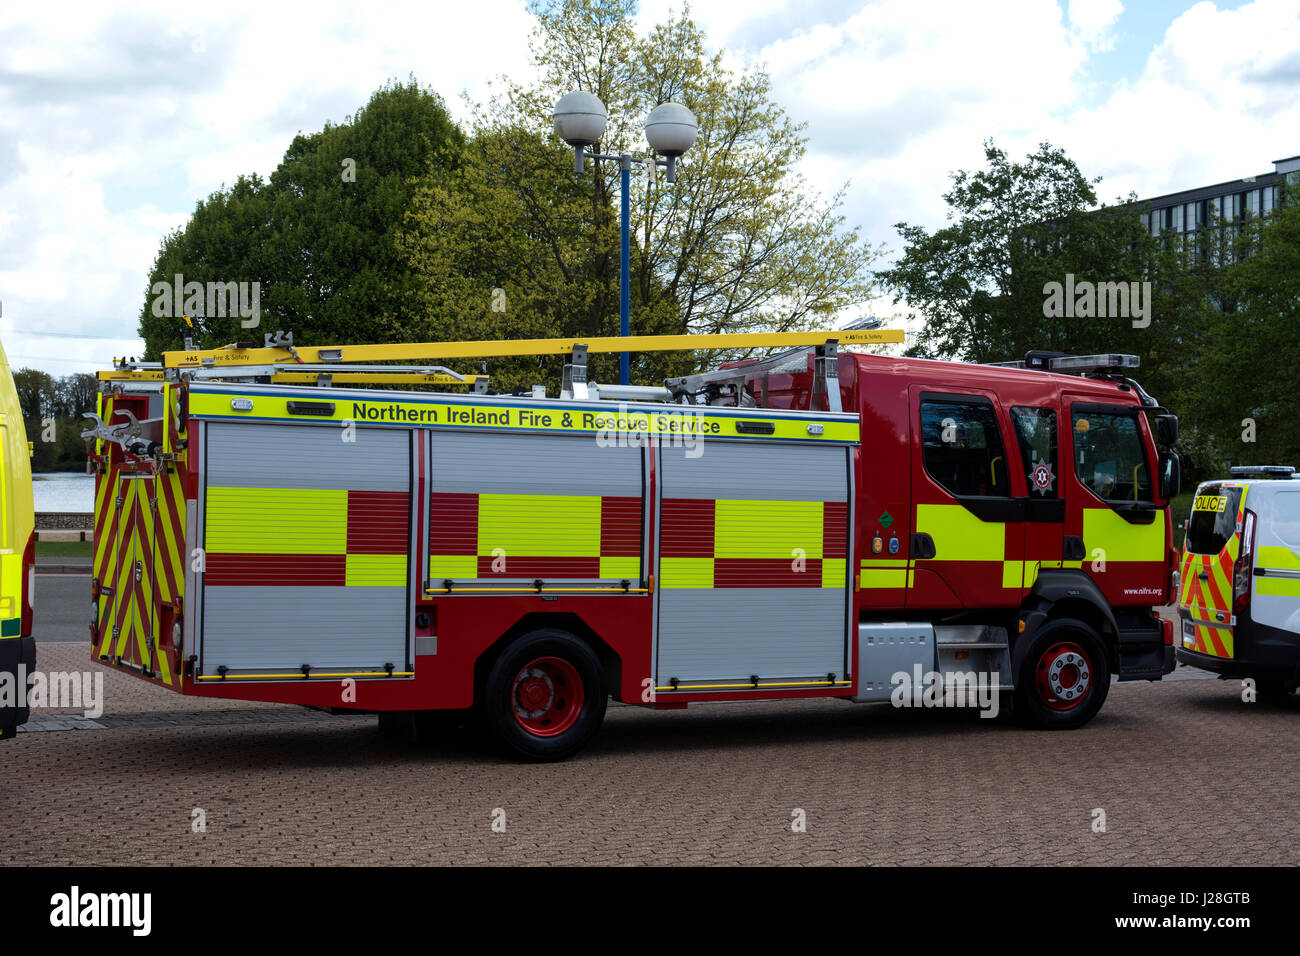 Ein Volvo Nordirland Feuer und Rettung Feuerwehrauto an der Commercial Vehicle Show, NEC, Birmingham, UK Stockfoto